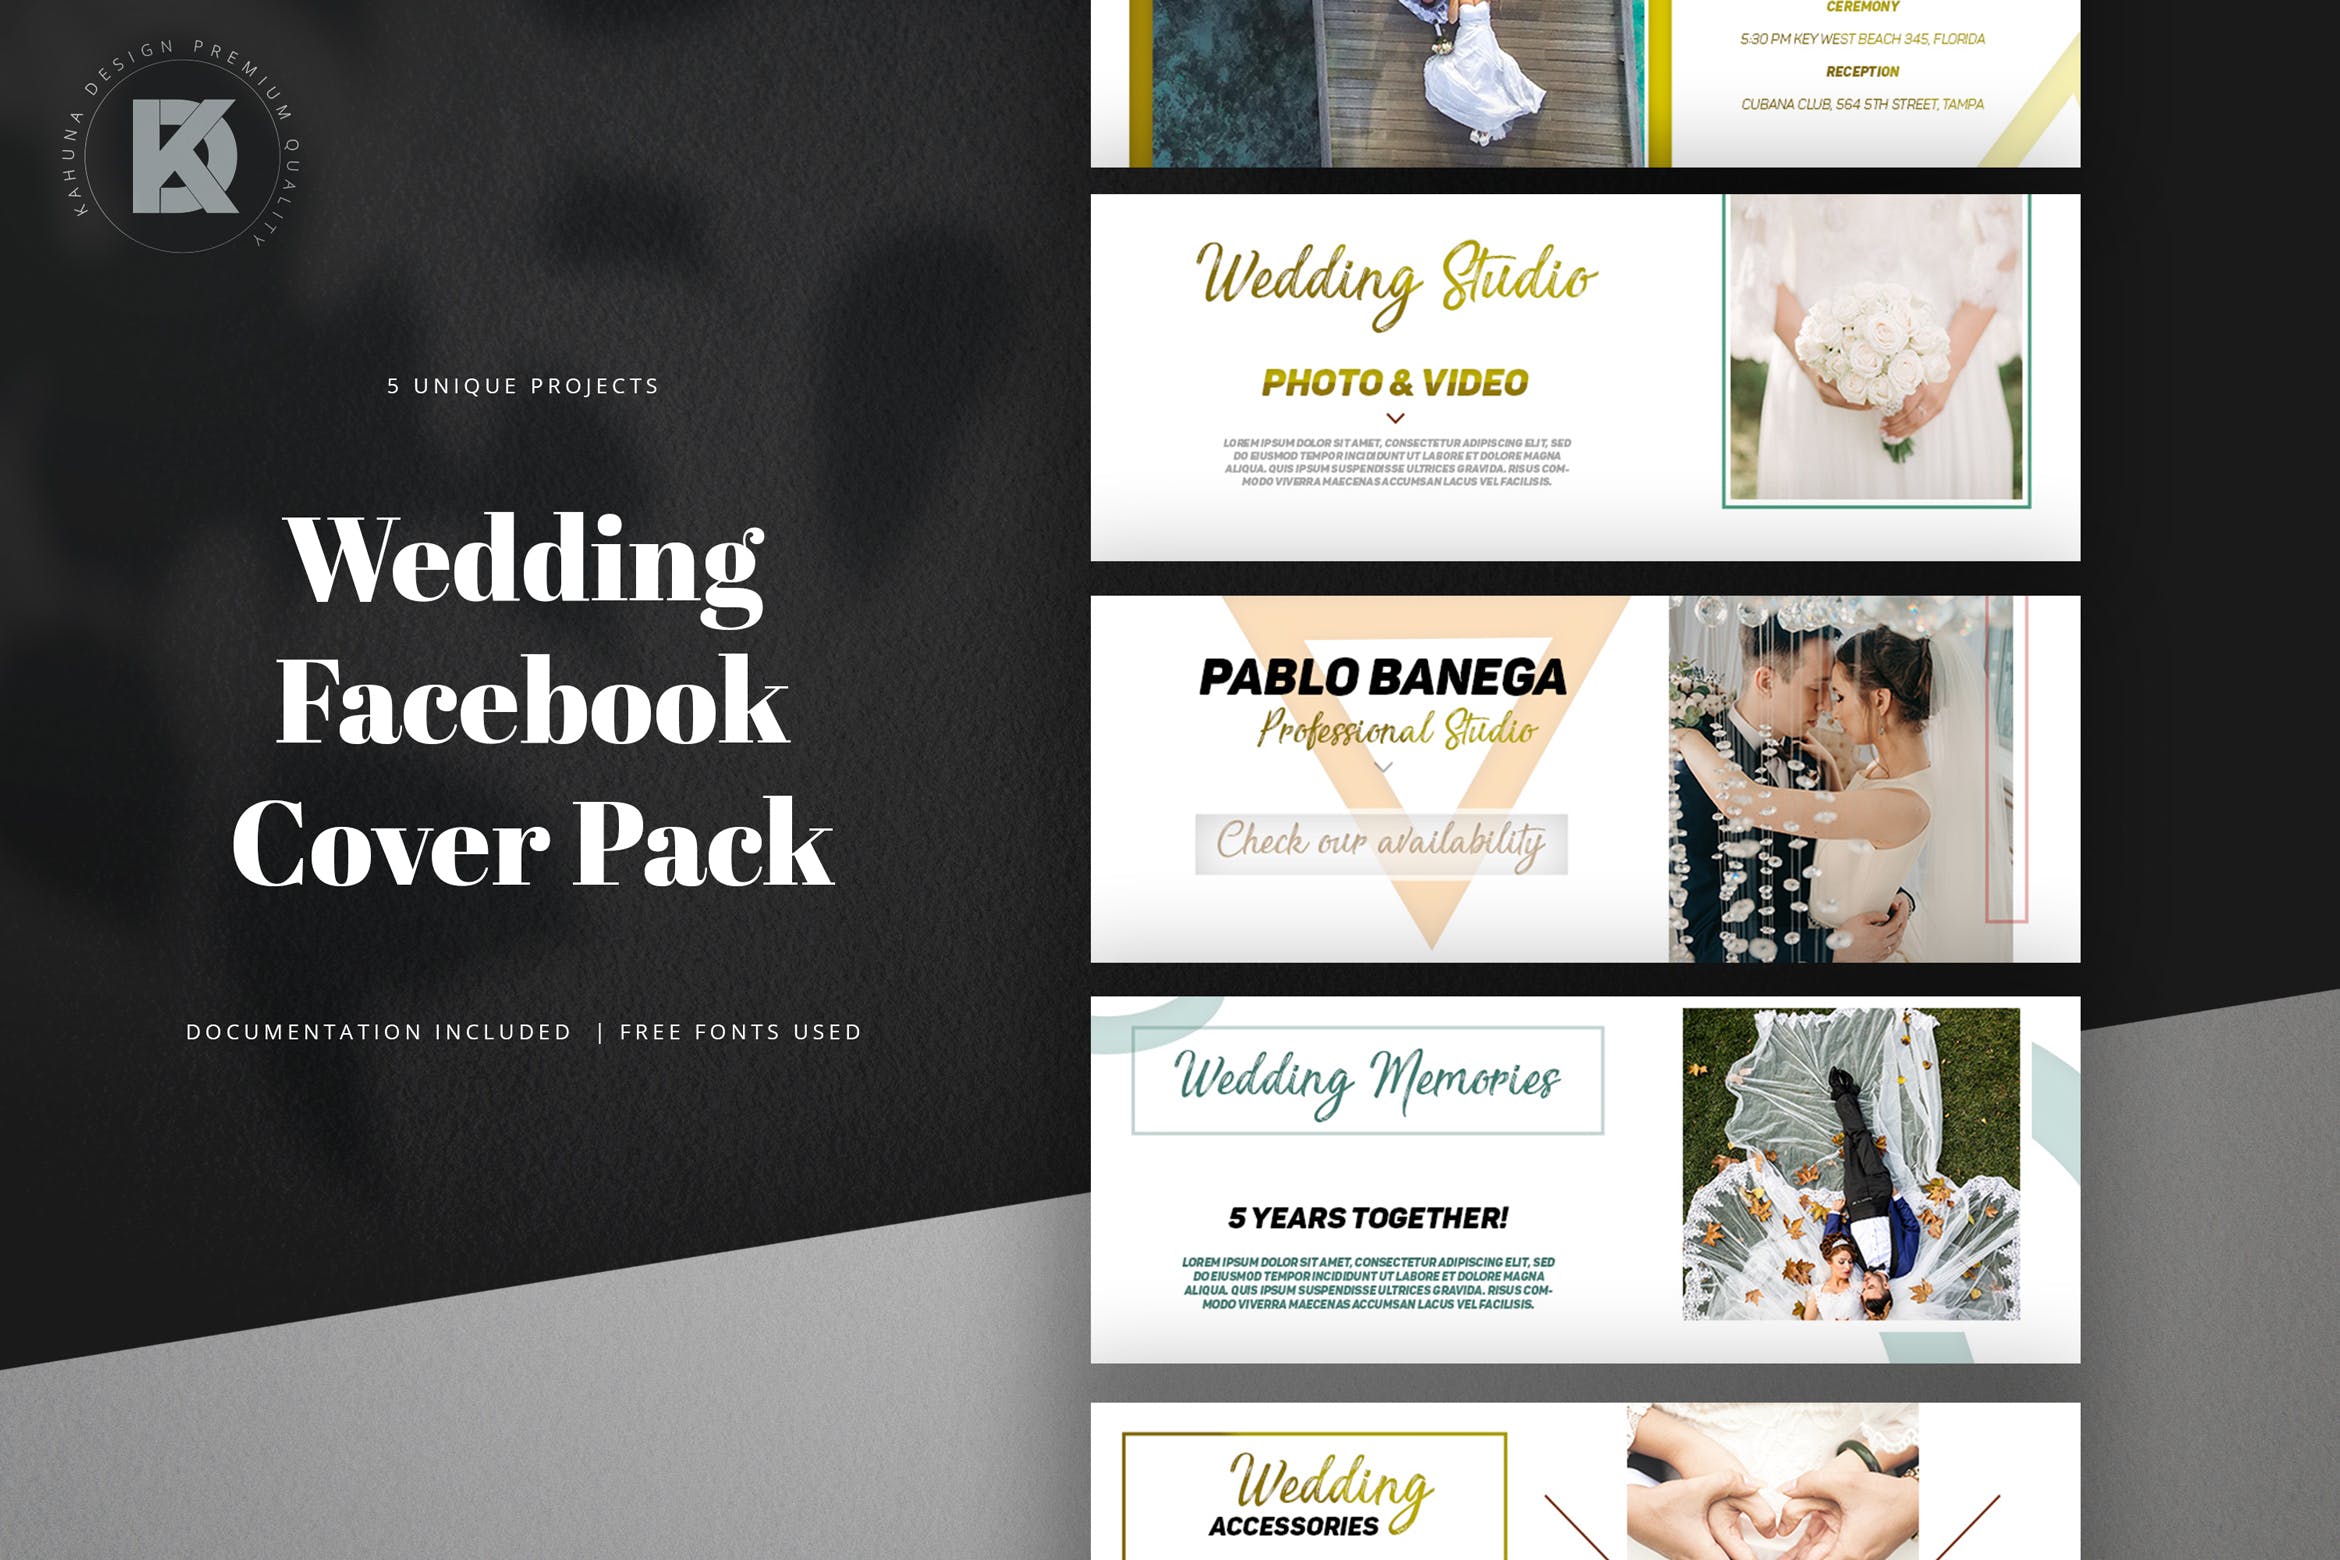 婚礼婚宴活动邀请Facebook封面设计模板第一素材精选 Wedding Facebook Cover Kit插图